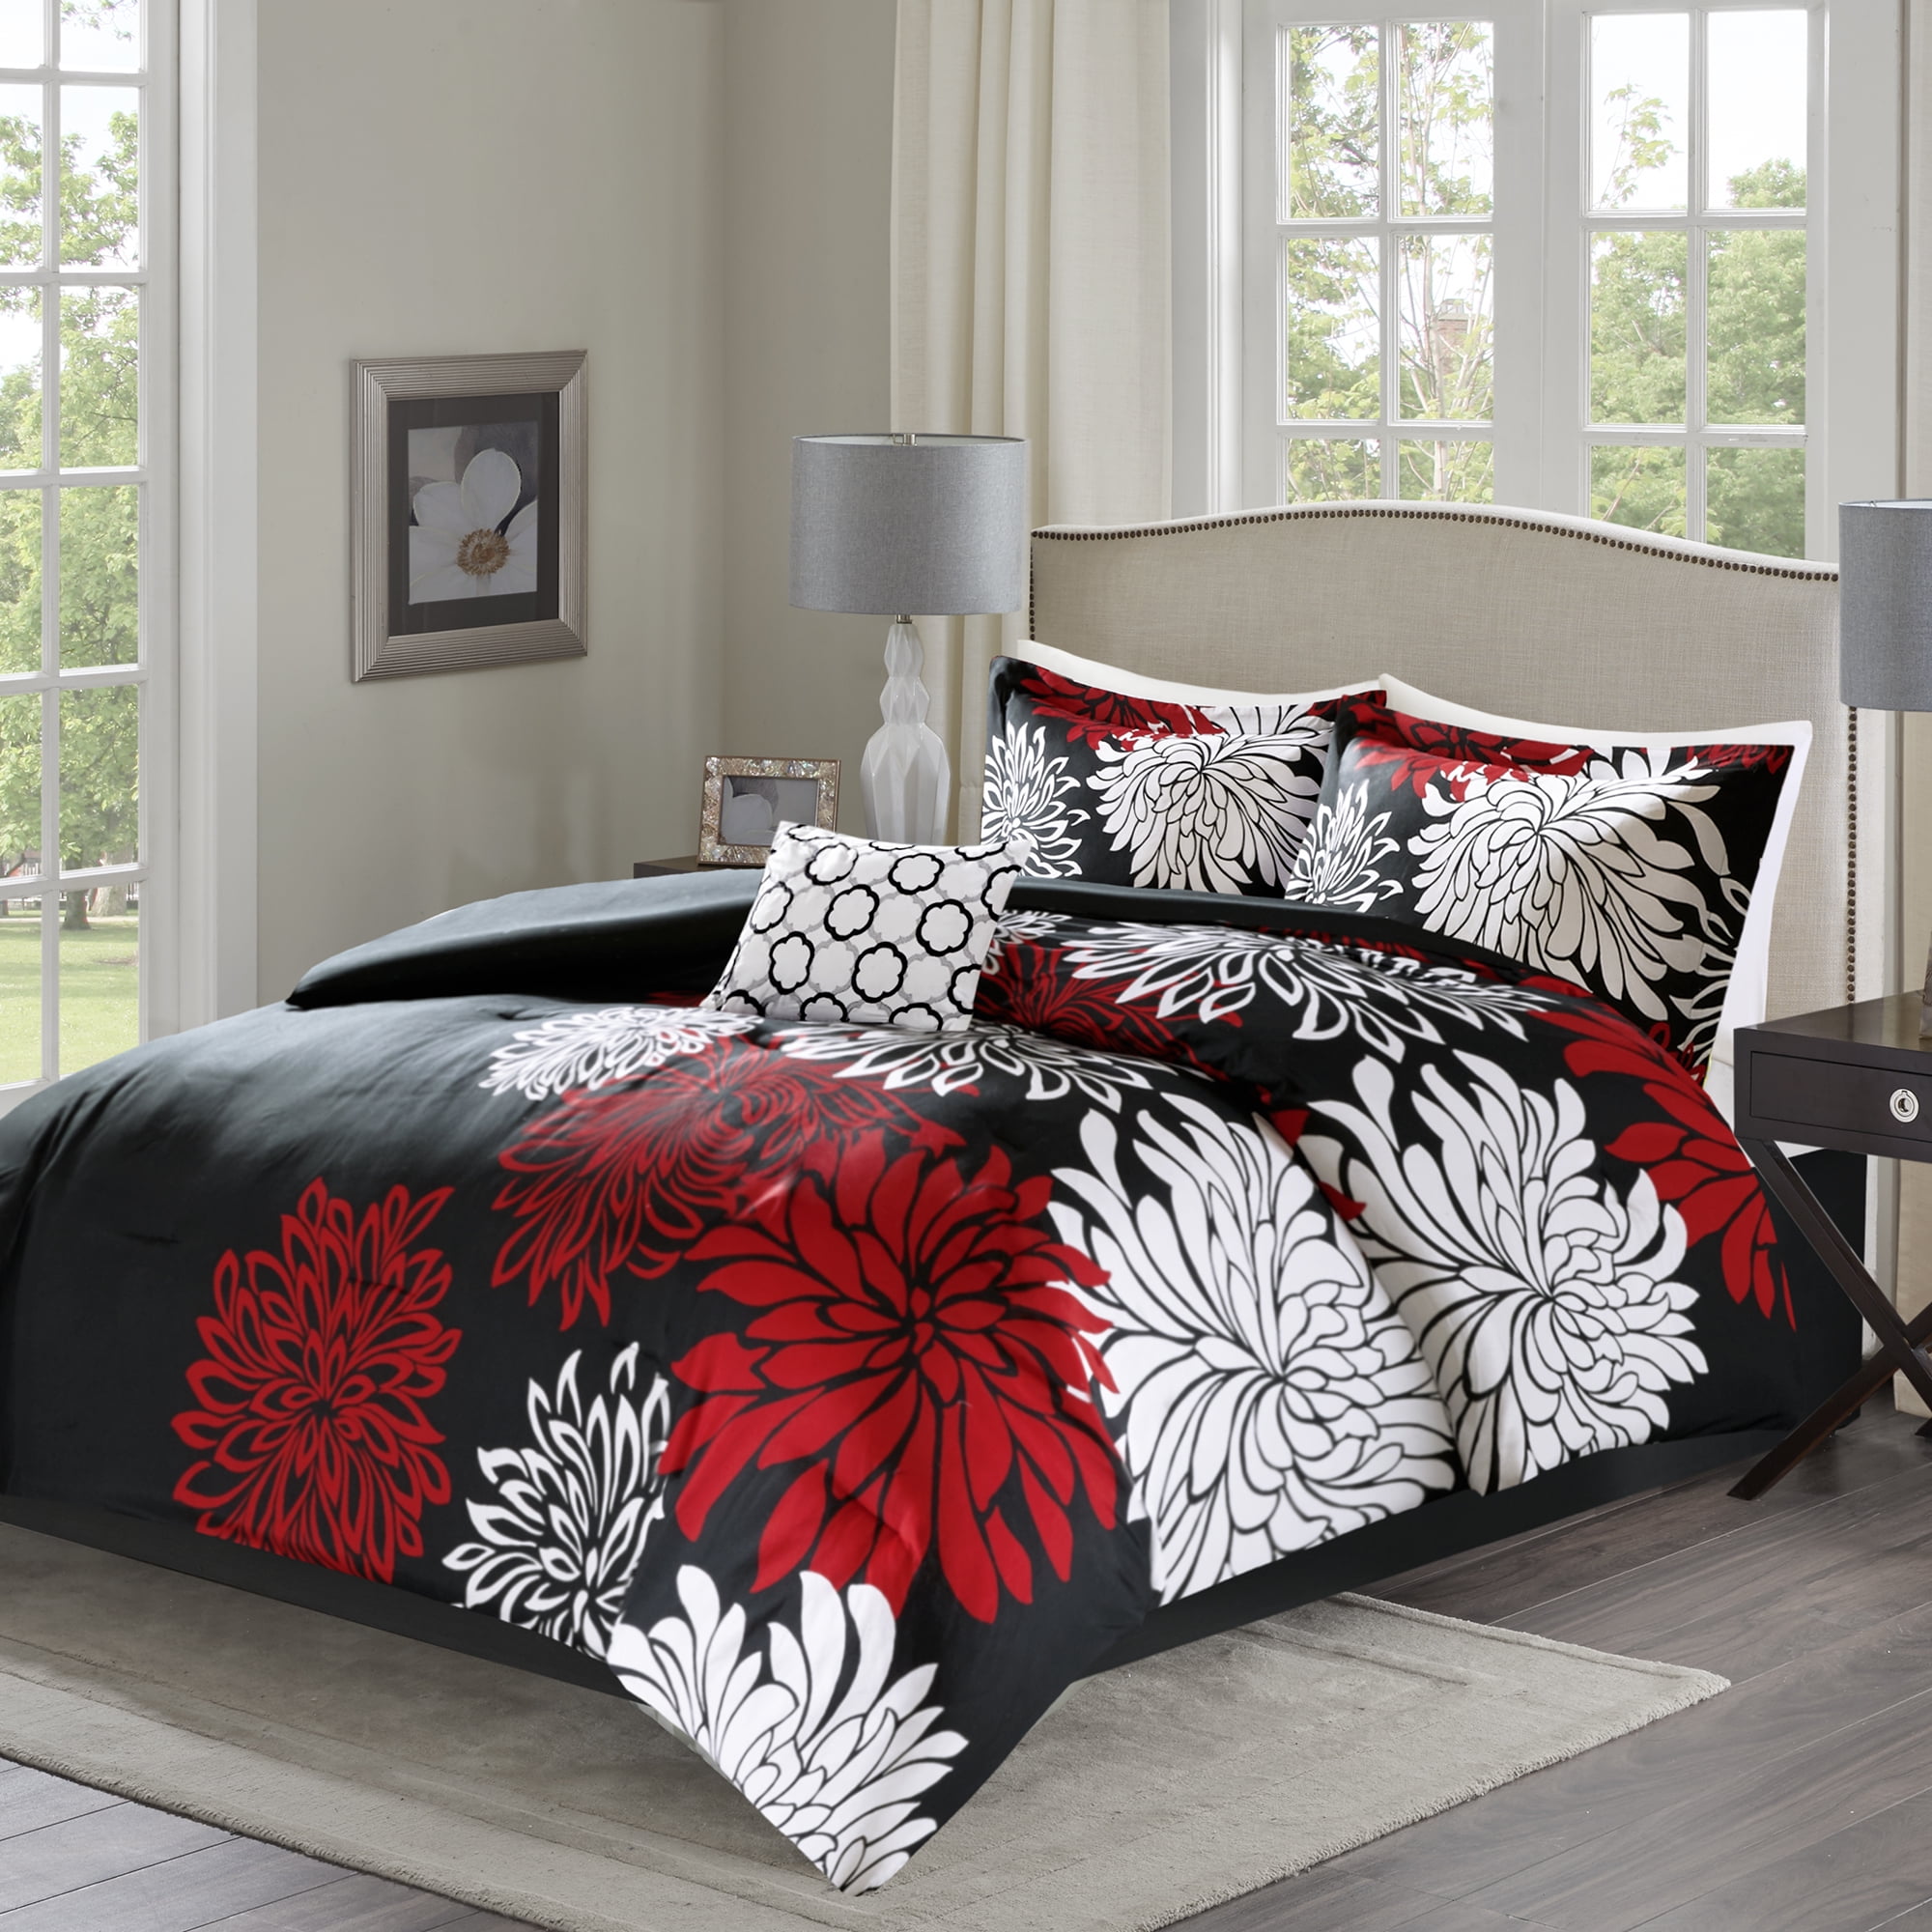 Fl Printed Comforter Set, Black And Red Bedding Sets King